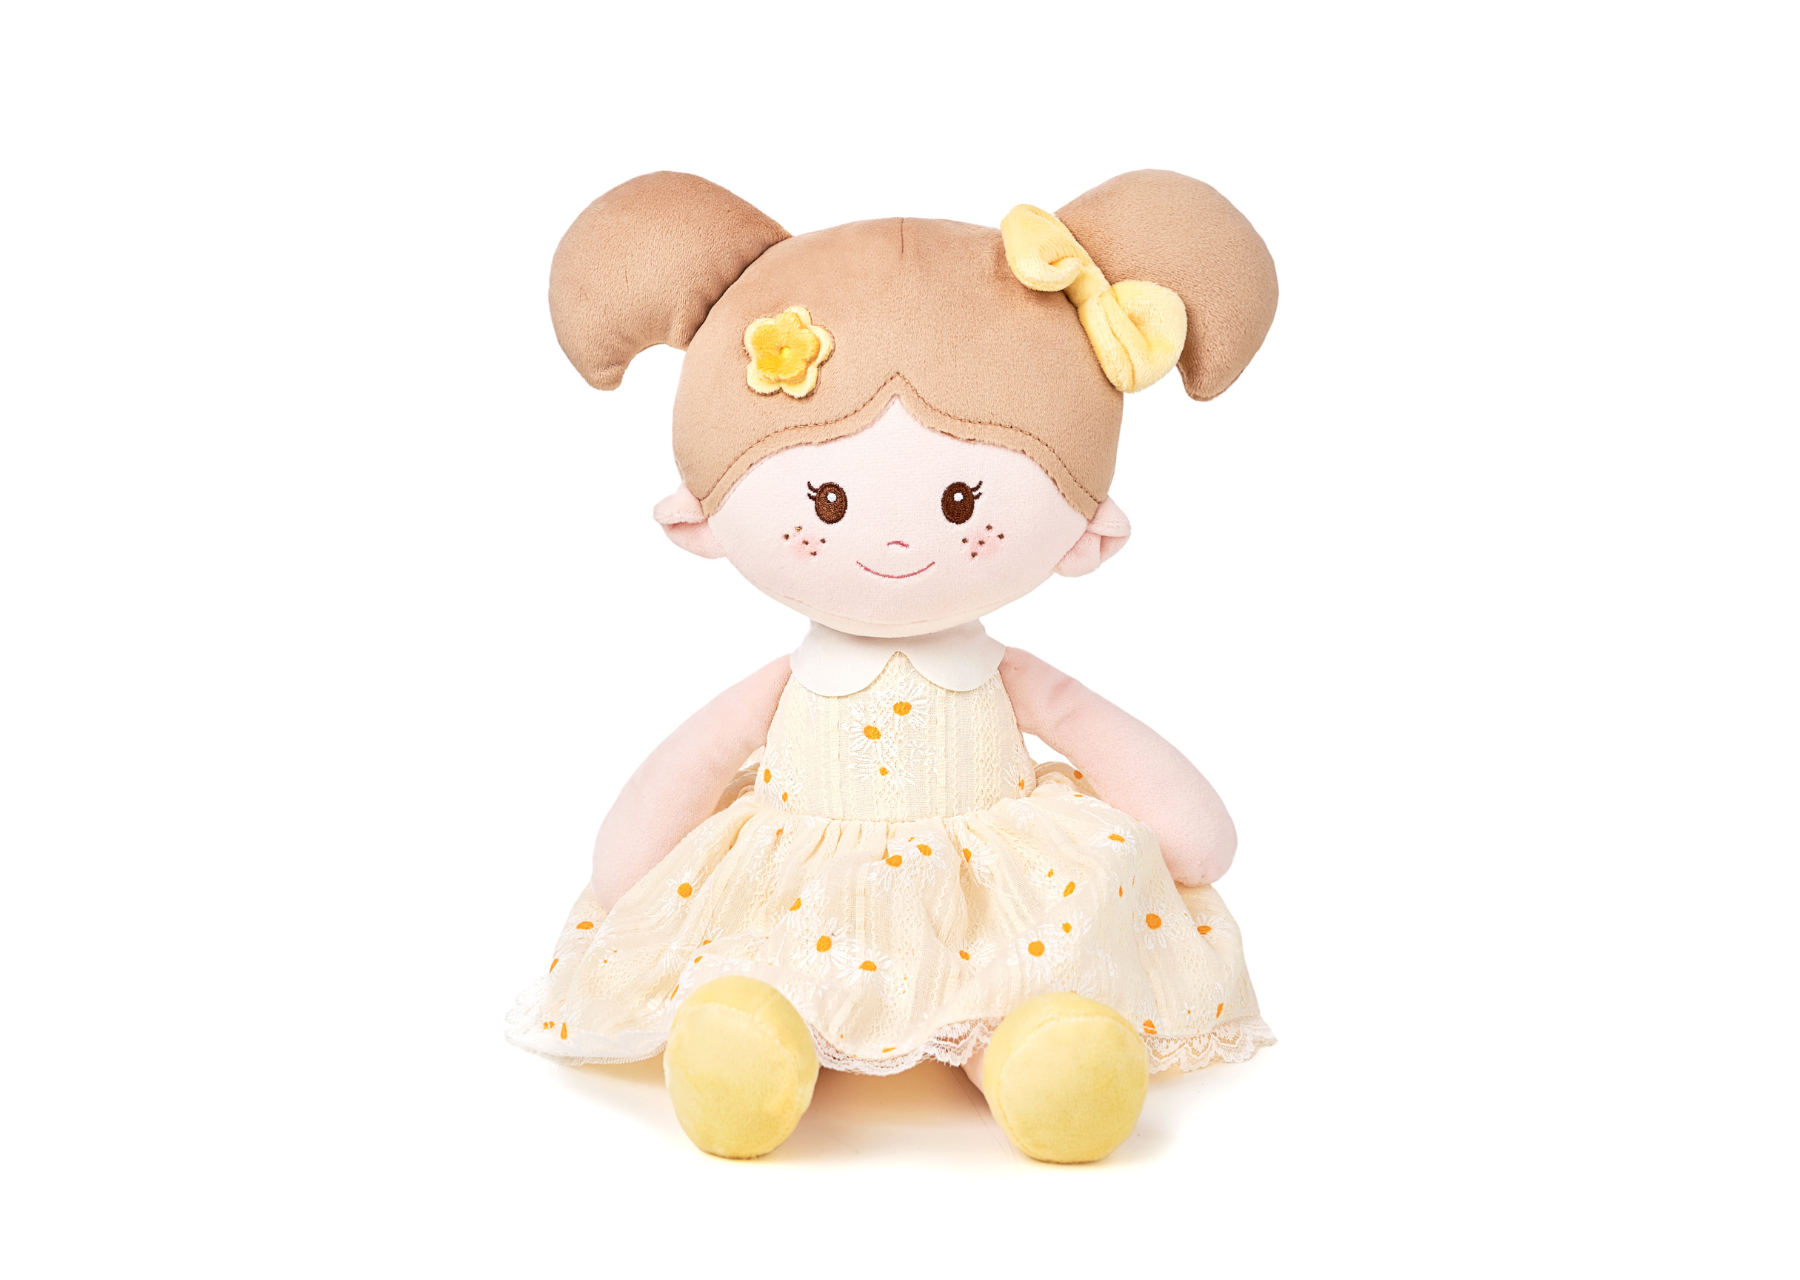 Personalized Christmas Gift Bundle - Leya Doll